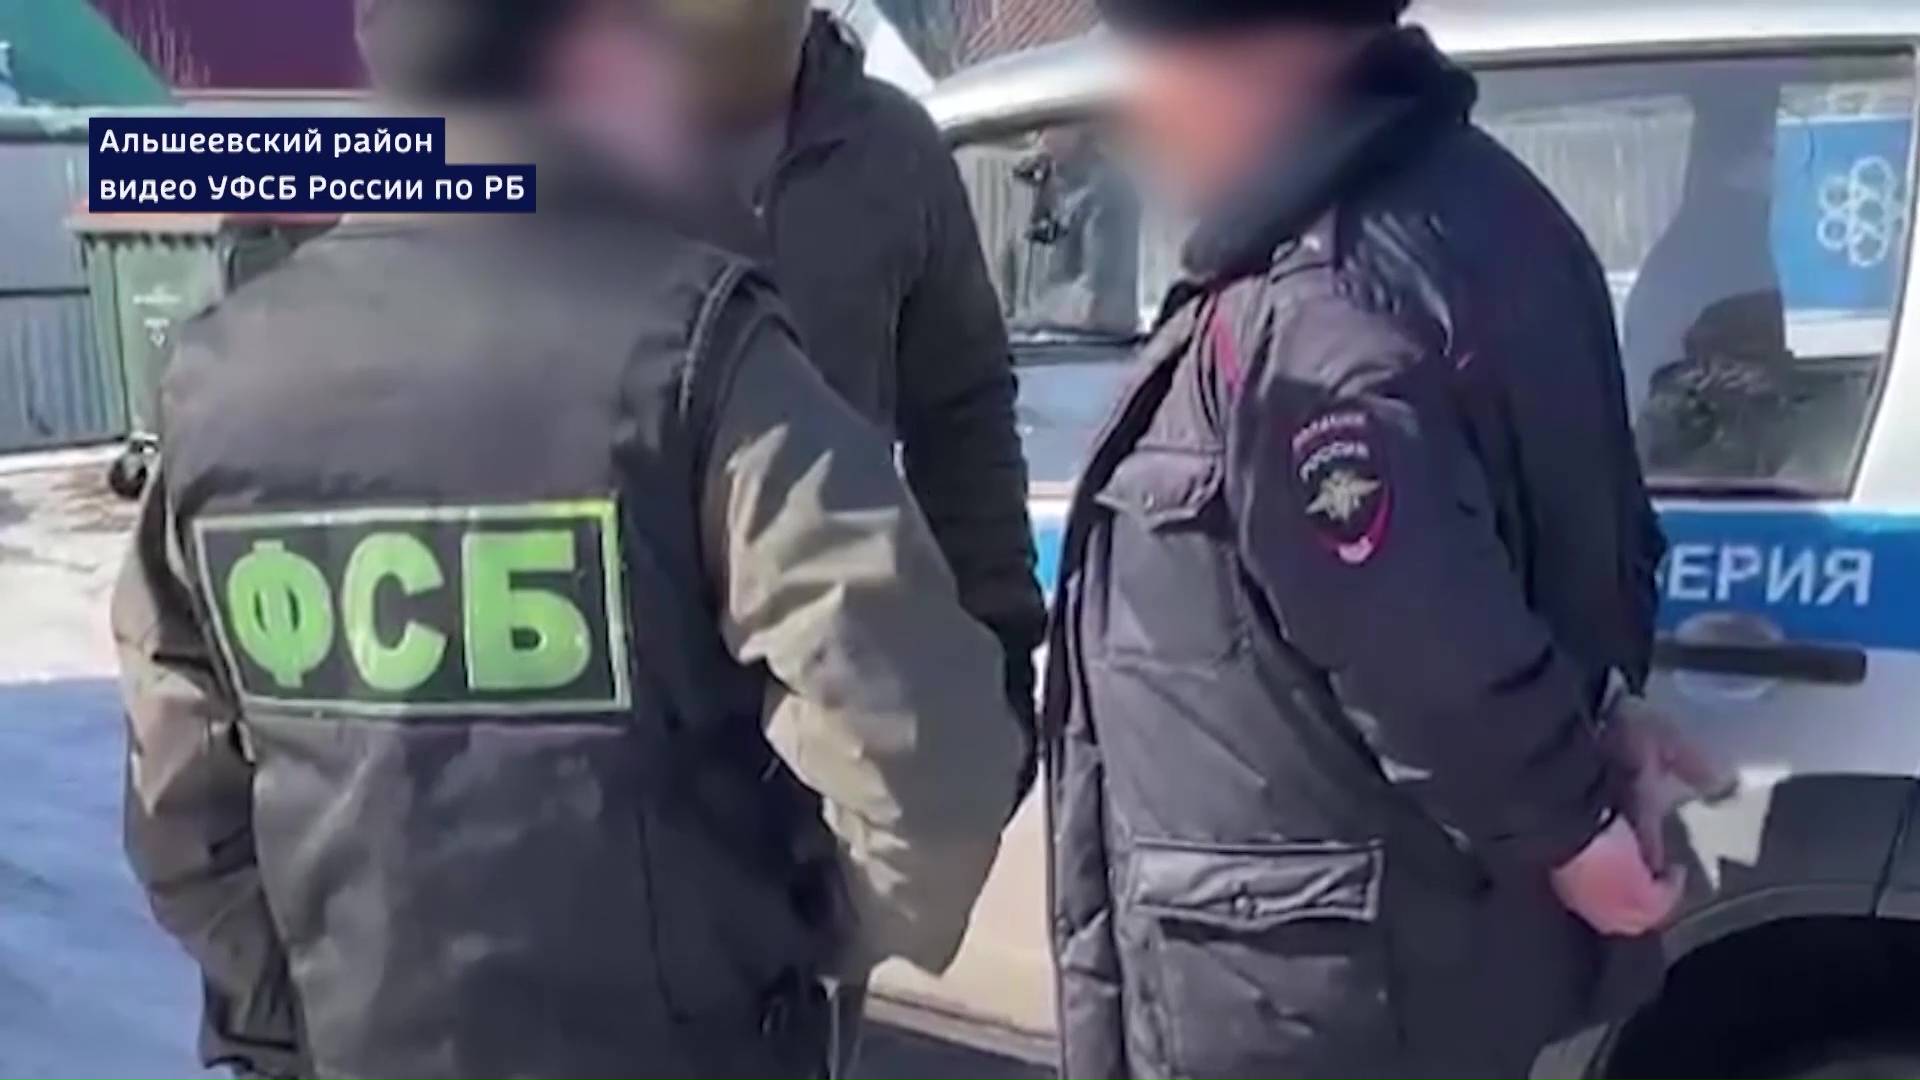 Бизнесмен в погонах: публикуем подробности задержания подполковника в Башкирии